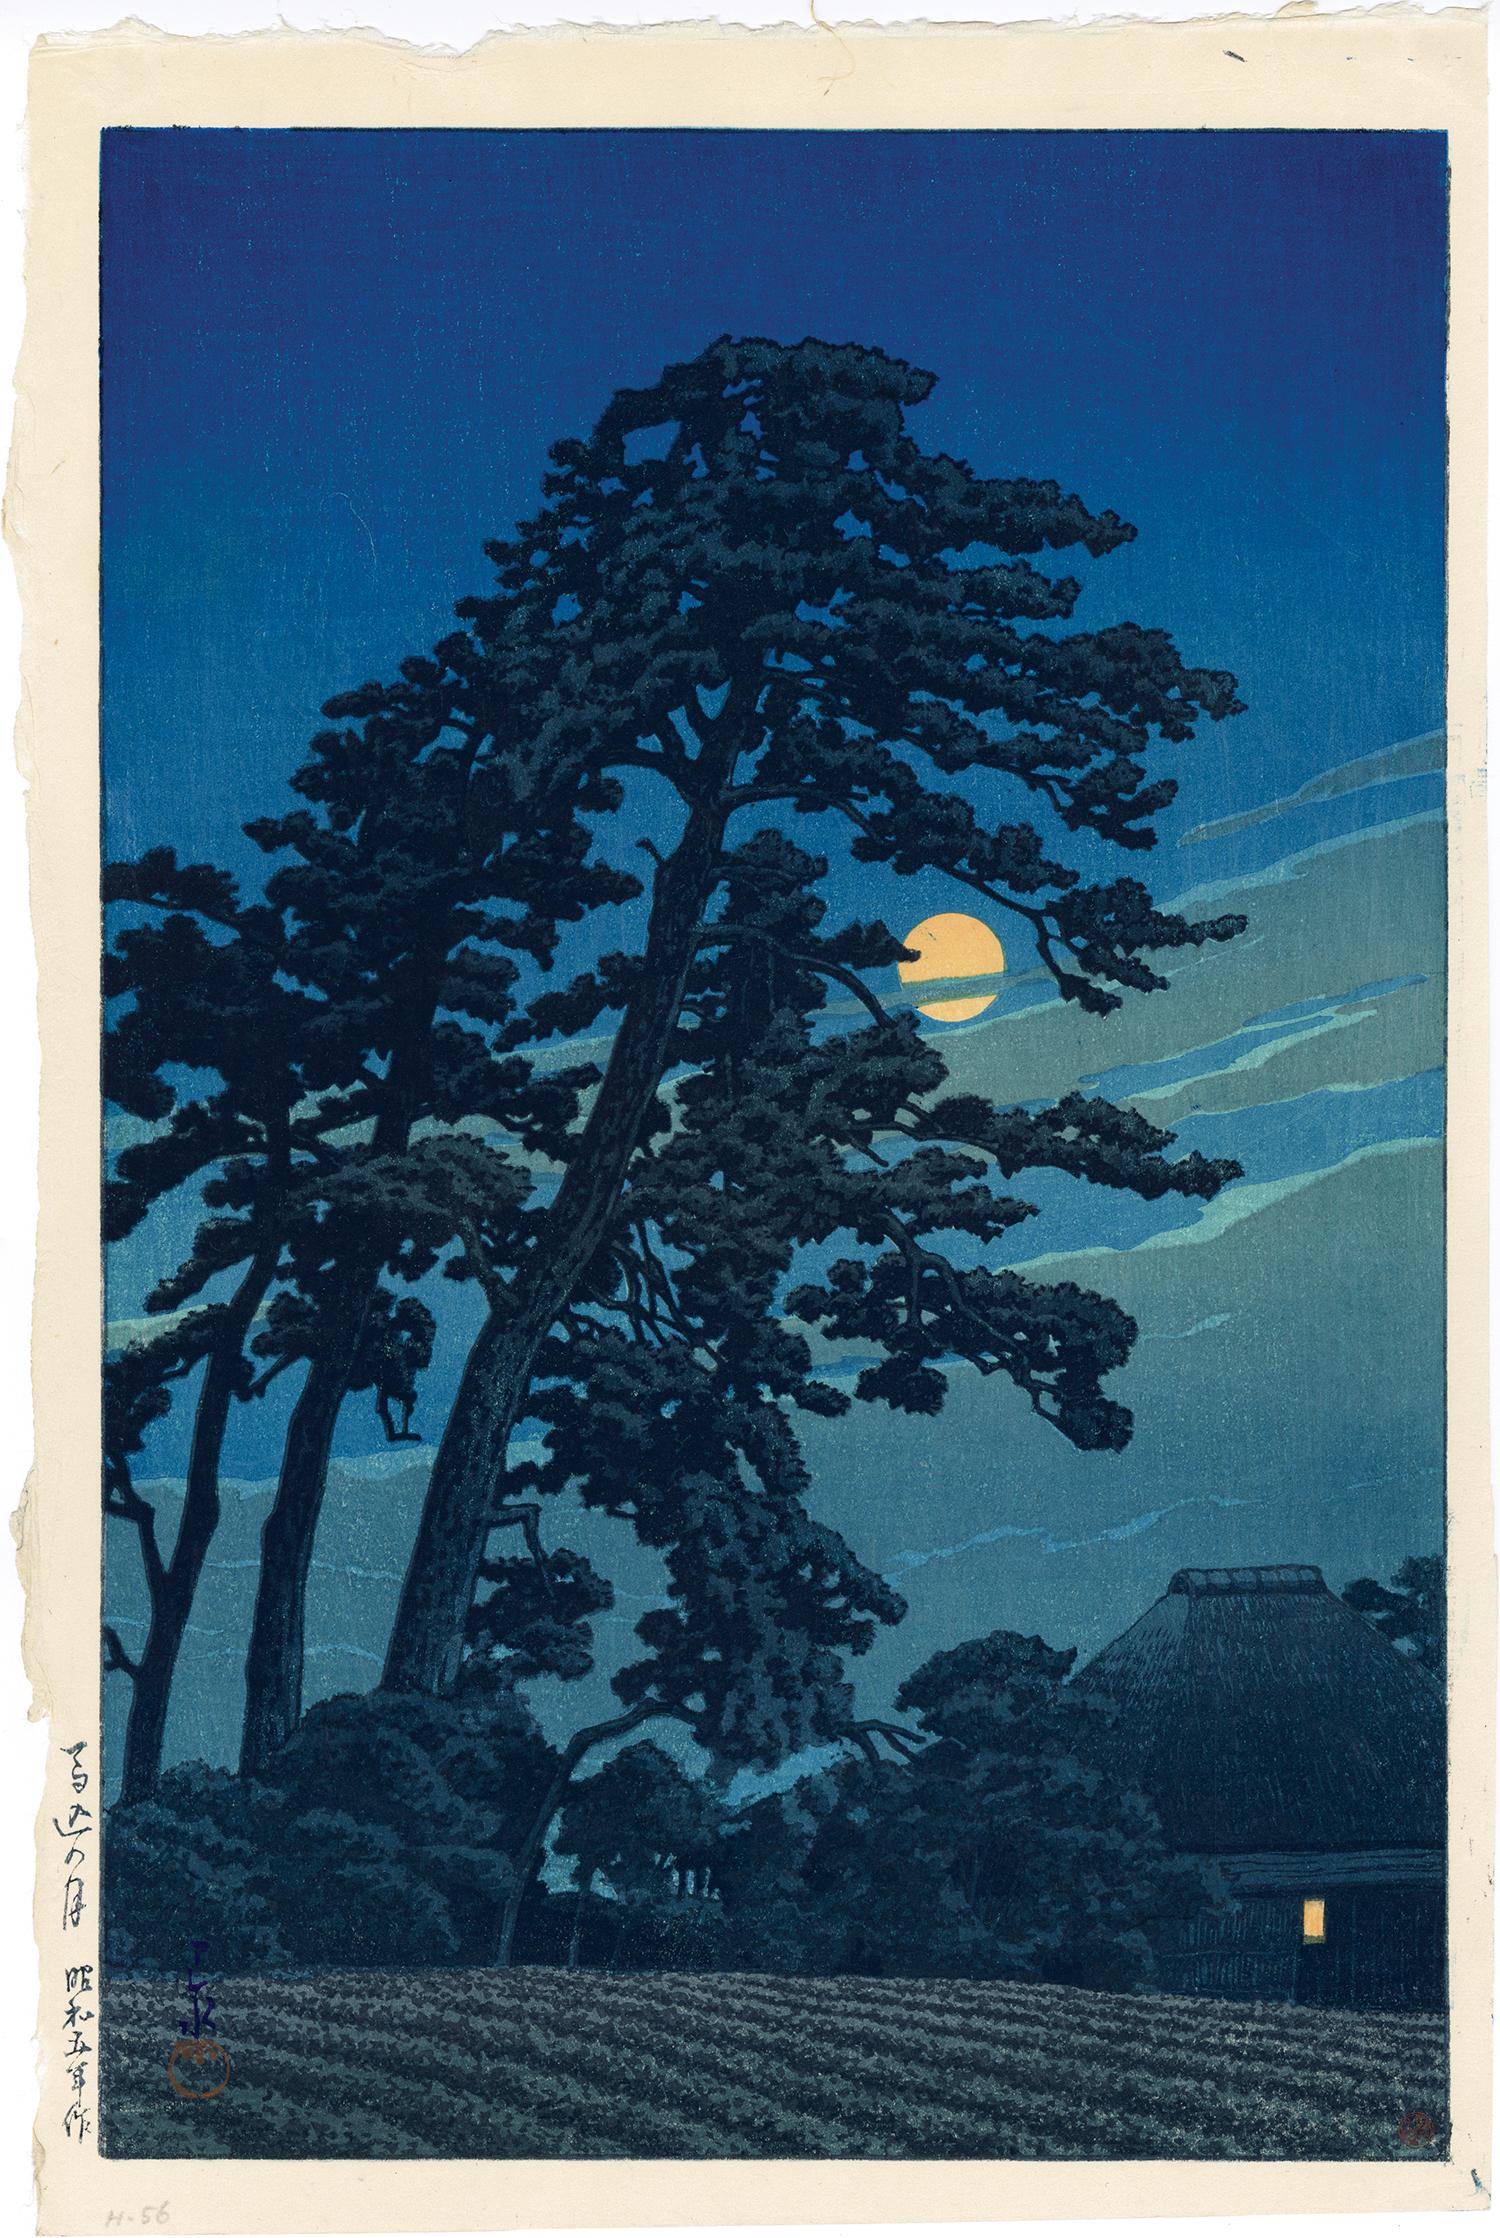 Kawase Hasui Landscape Print - Moon at Magome